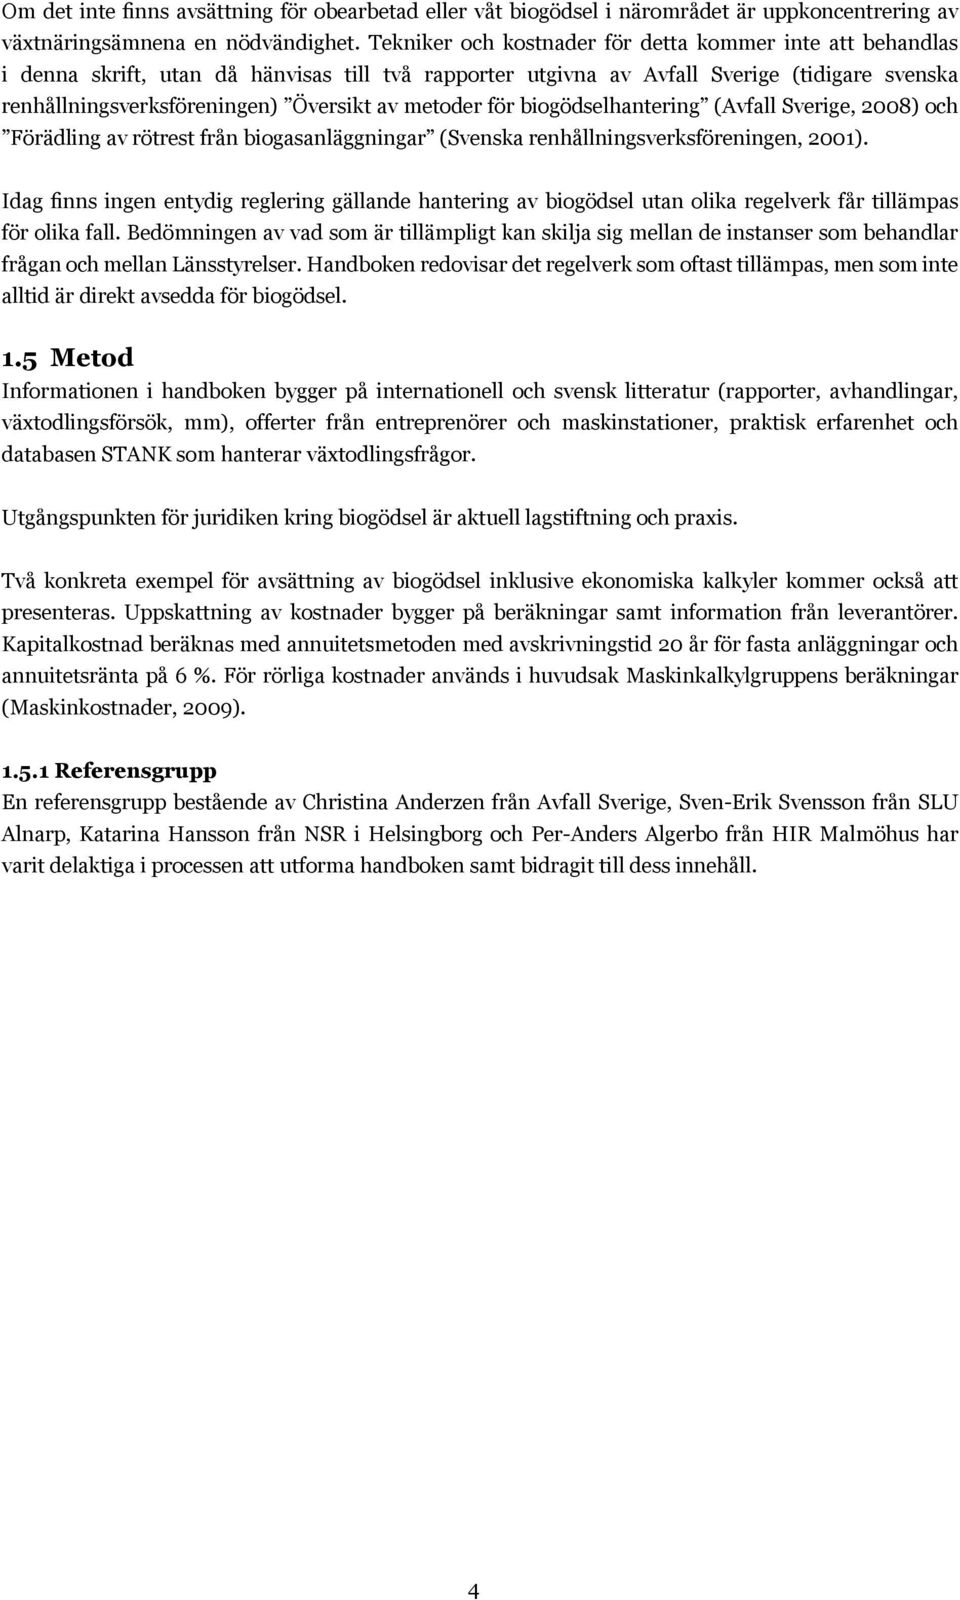 metoder för biogödselhantering (Avfall Sverige, 2008) och Förädling av rötrest från biogasanläggningar (Svenska renhållningsverksföreningen, 2001).